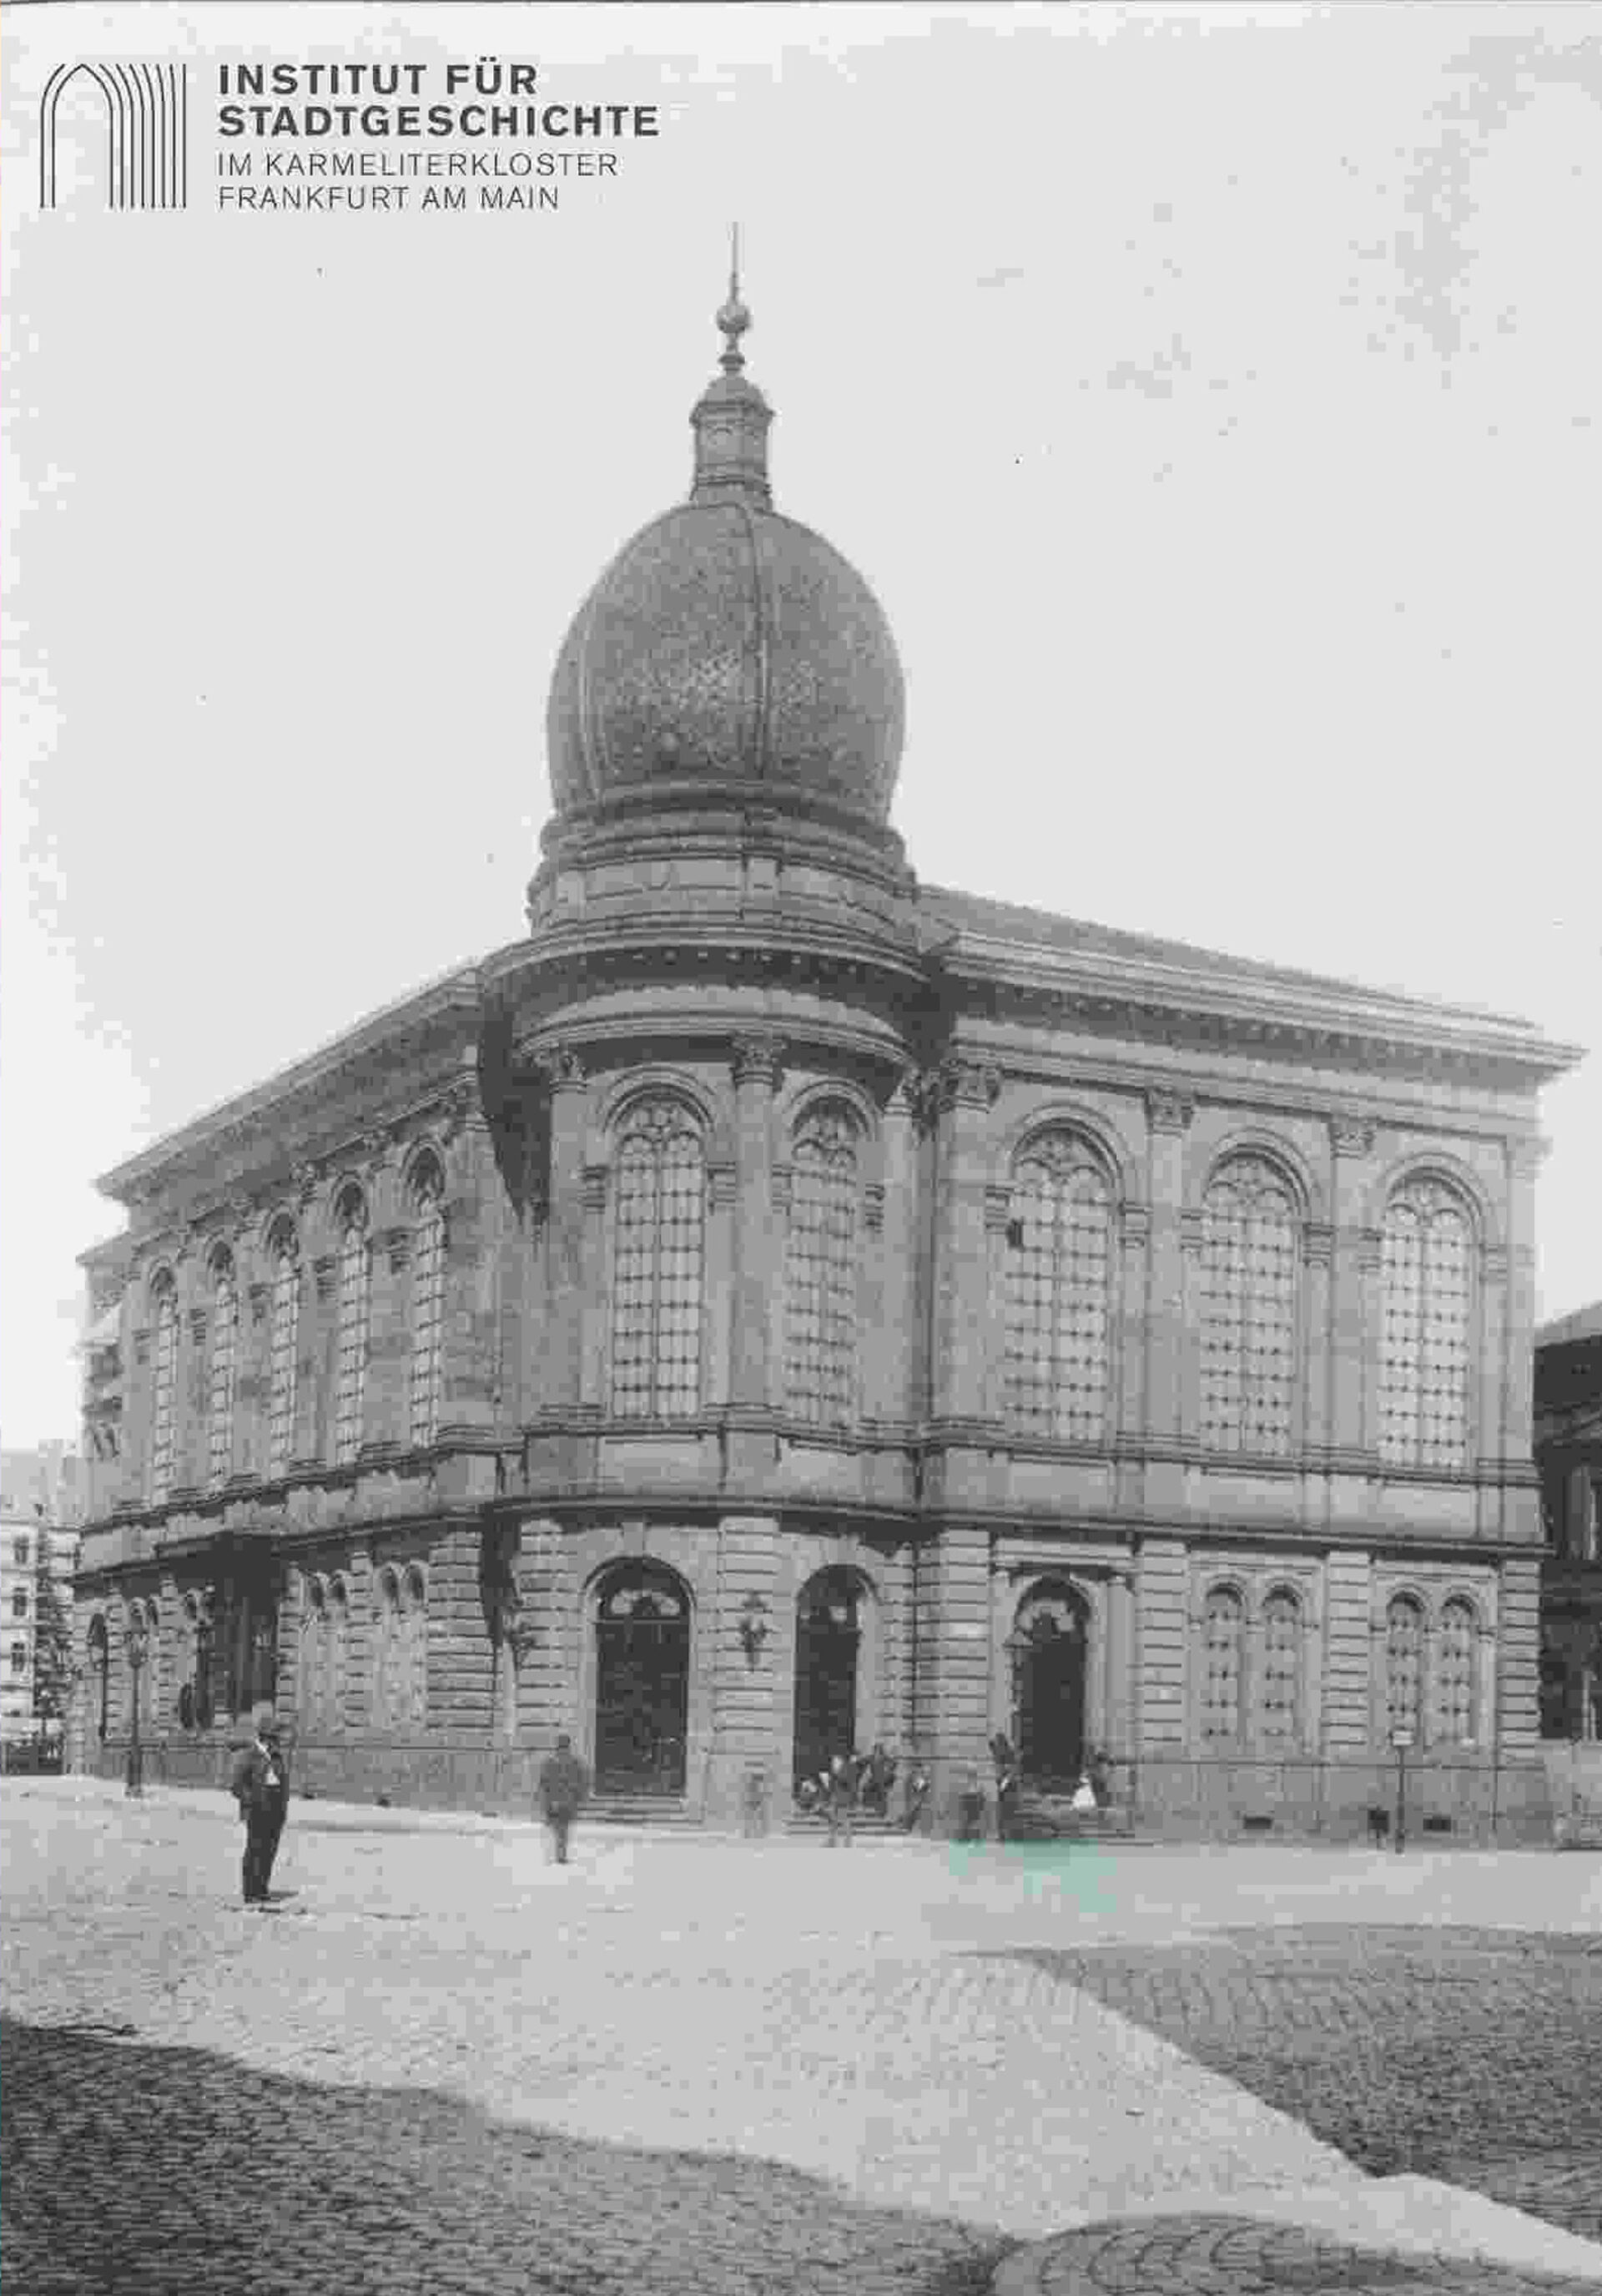 Institut für Stadtgeschichte Frankfurt am Main (ISG FFM), SS7A1998 18919